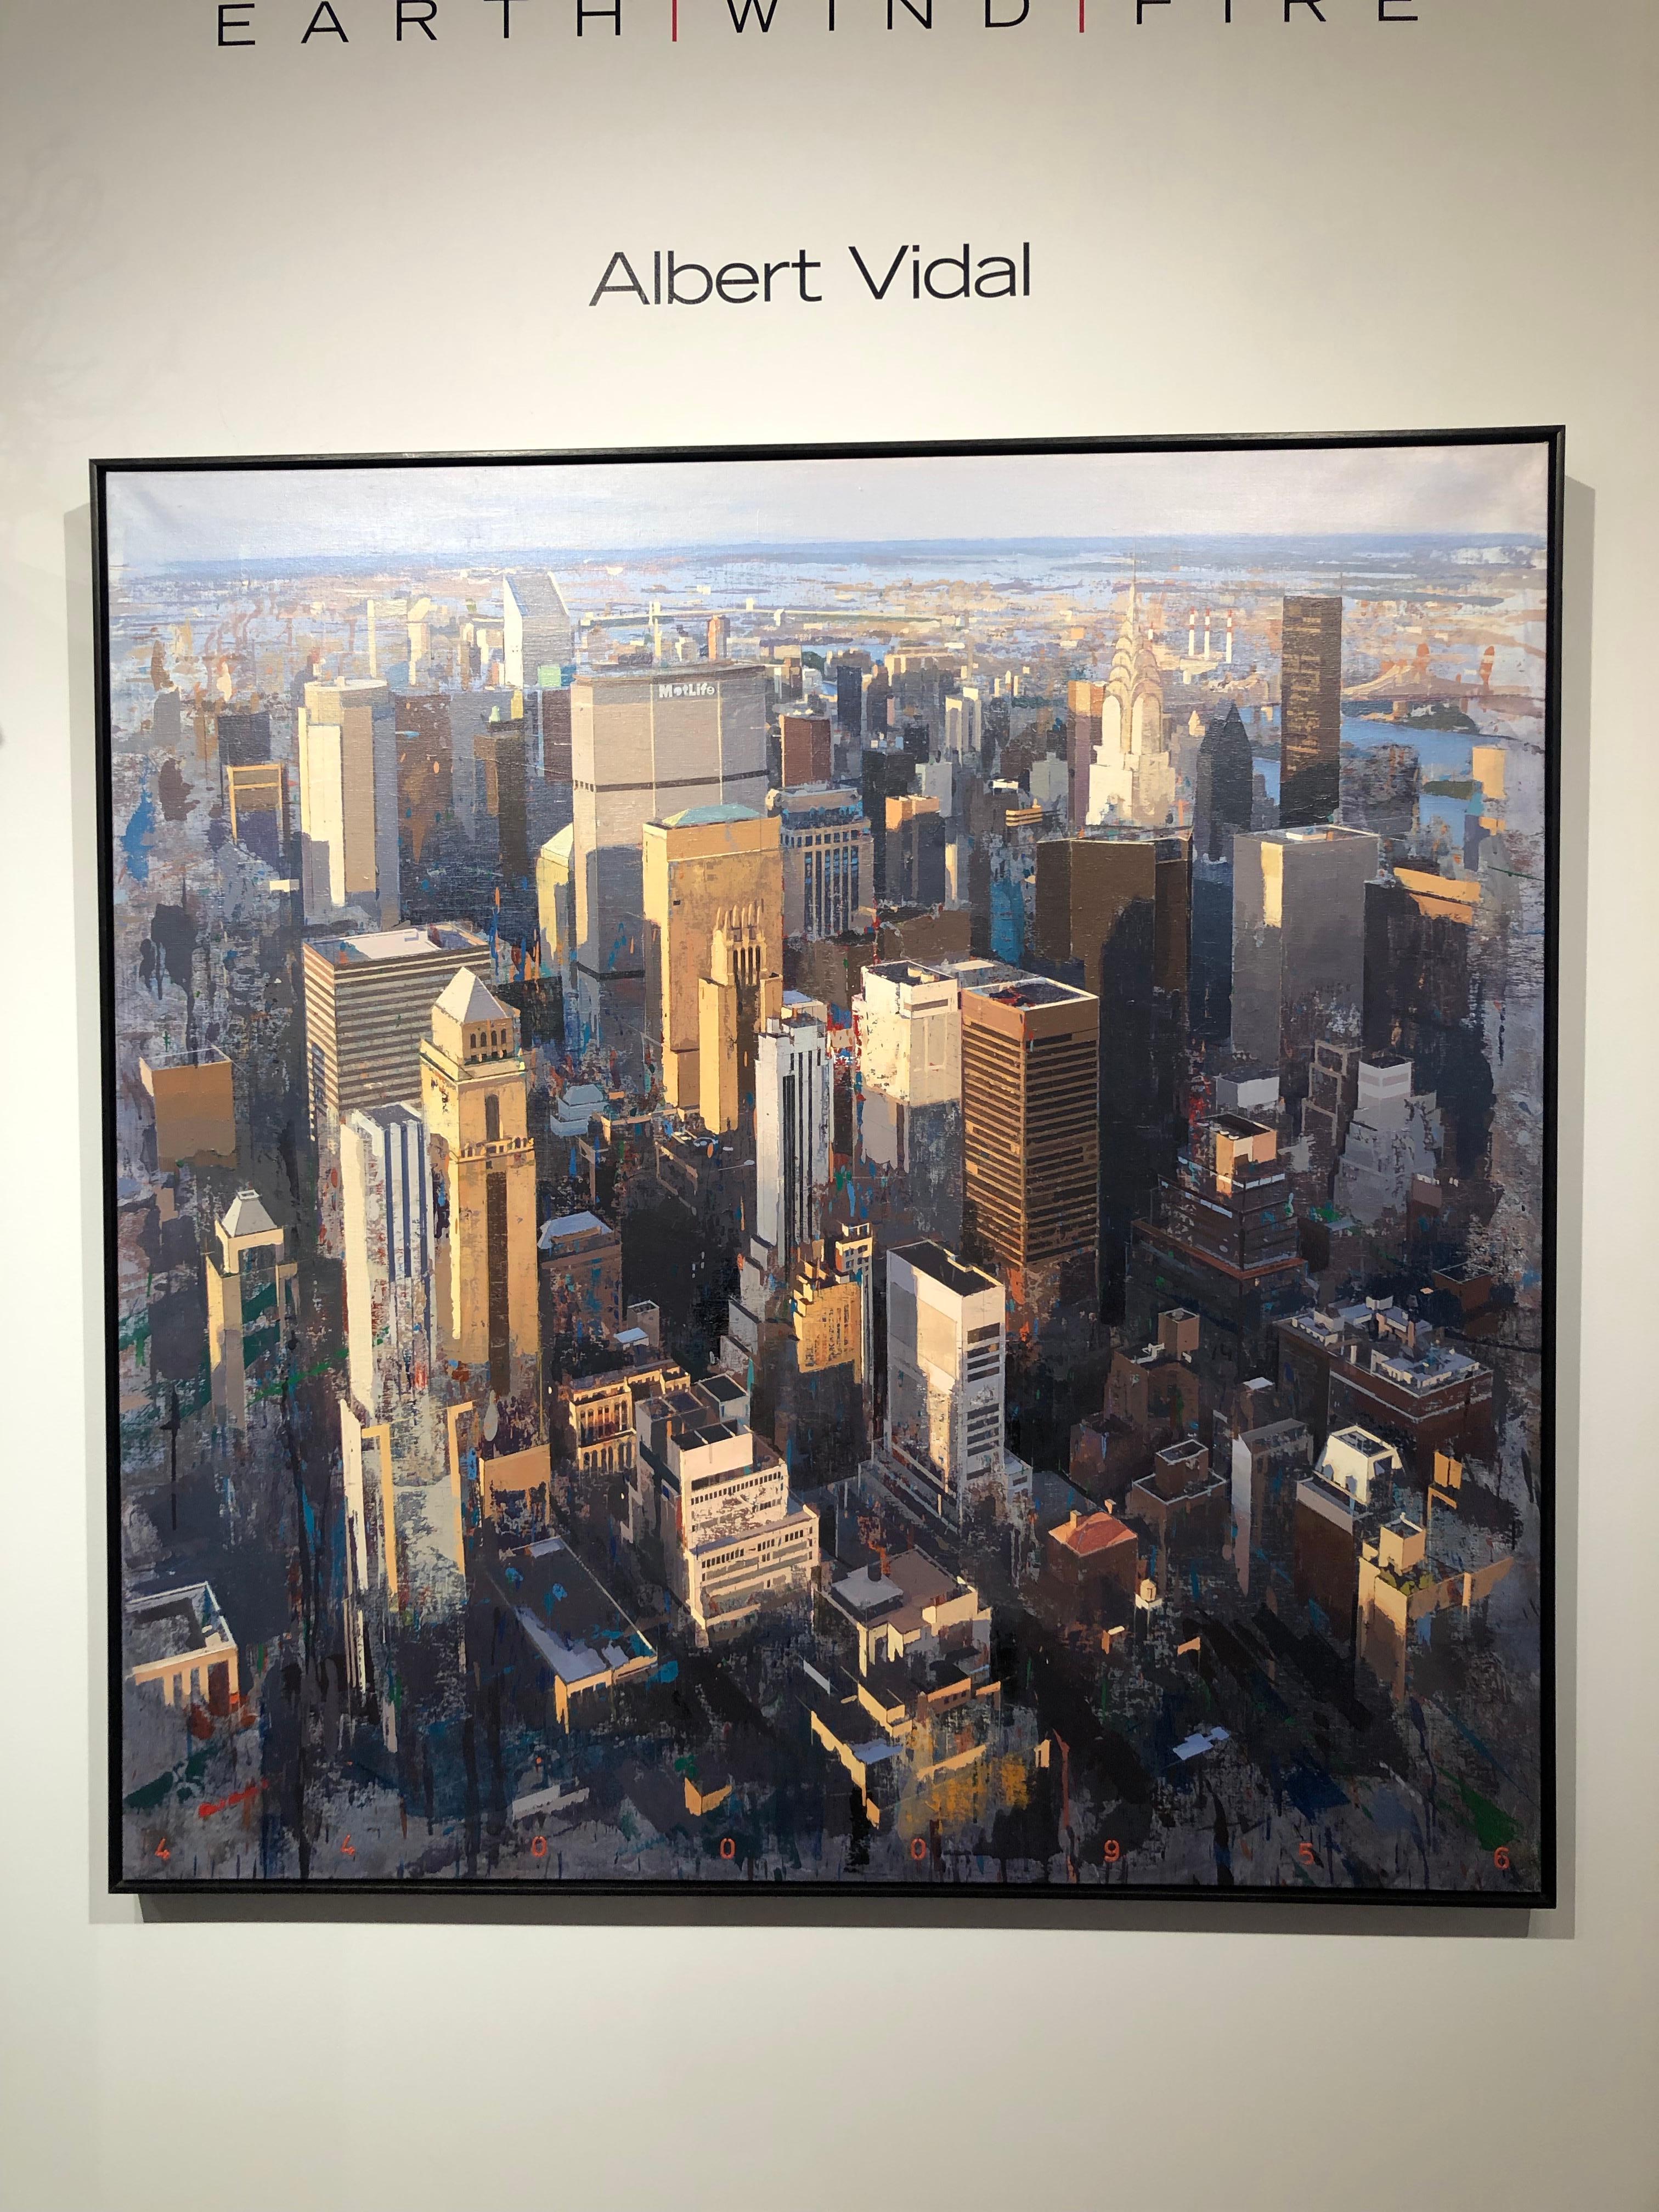 Lebensleben – New York City, Original-Ölgemälde mit Luftaufnahme, Öl auf Leinwand von Albert Vidal – Painting von Albert Vidal Moreno